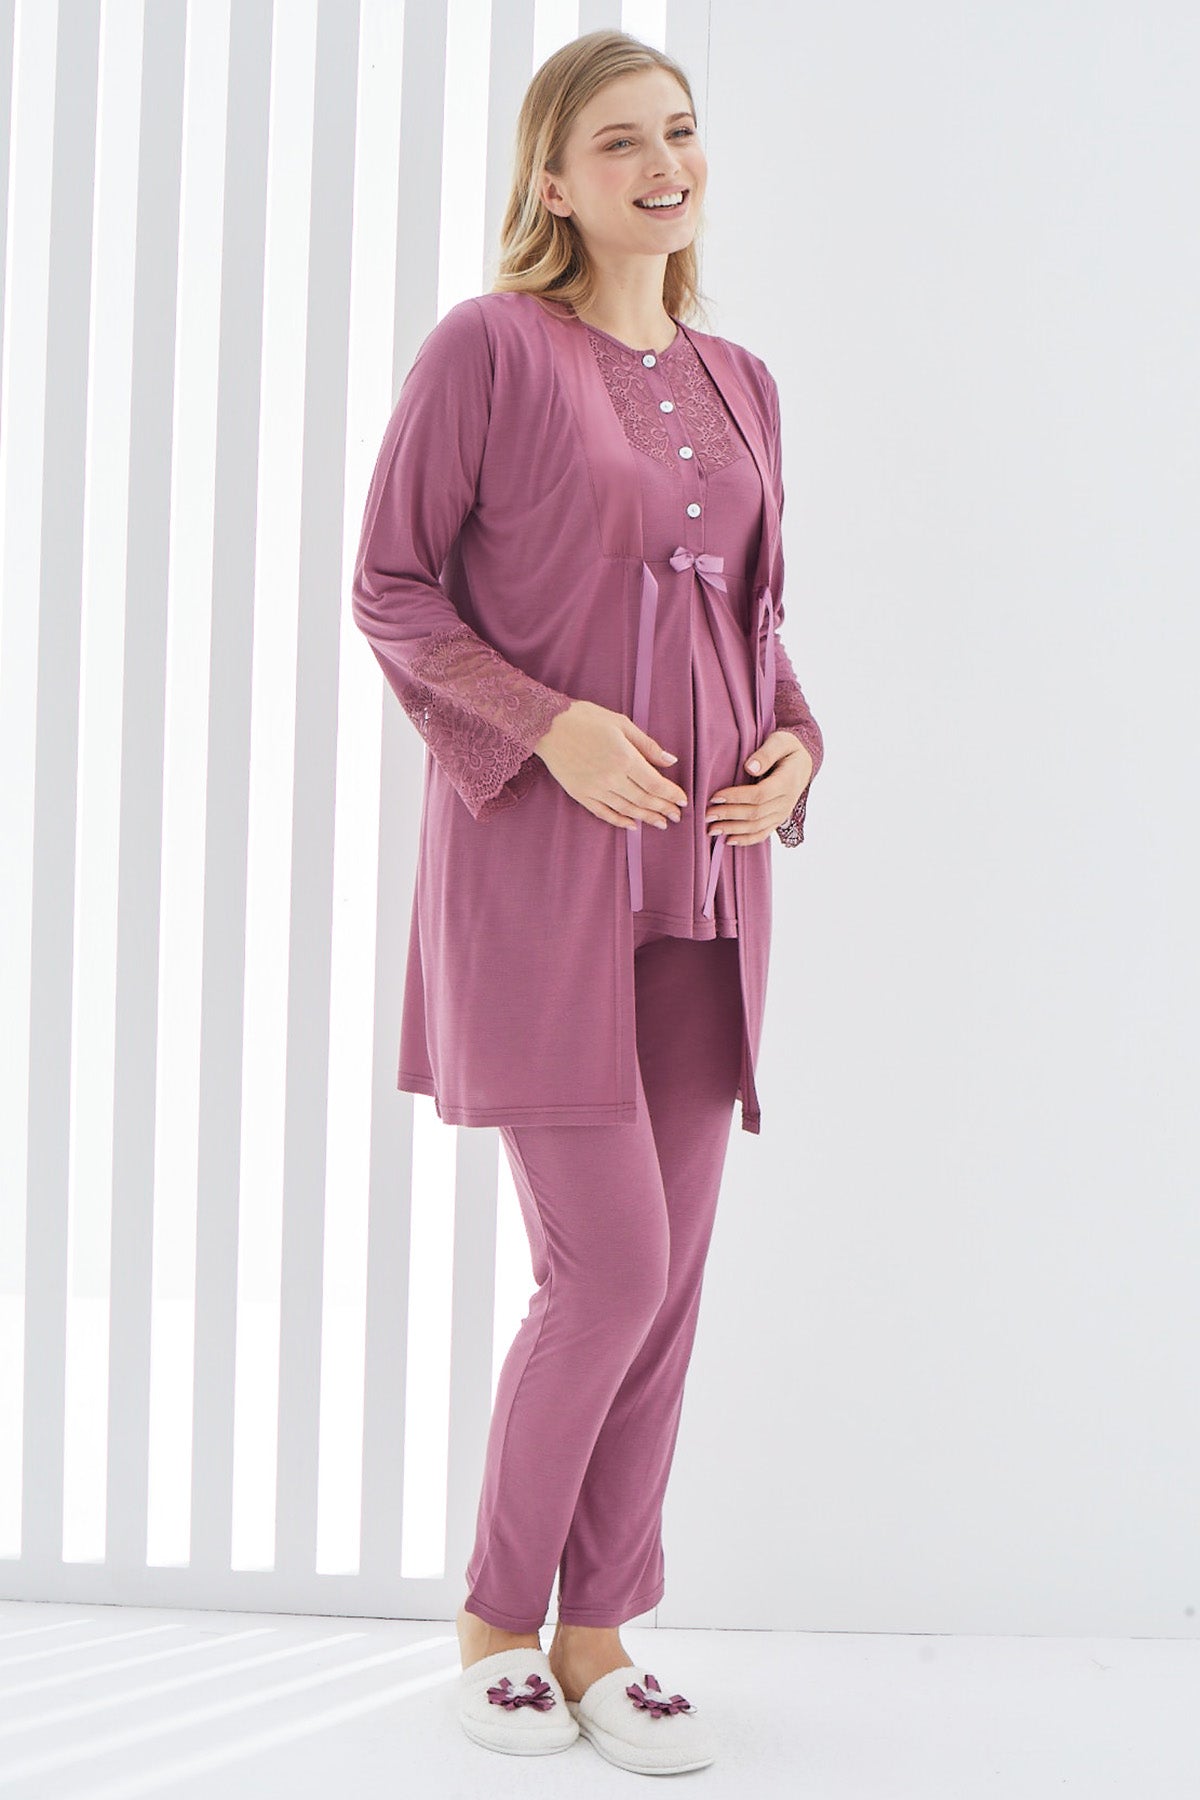 Dantelli Kol Sabahlıklı Lohusa Pijama Takımı - 3404